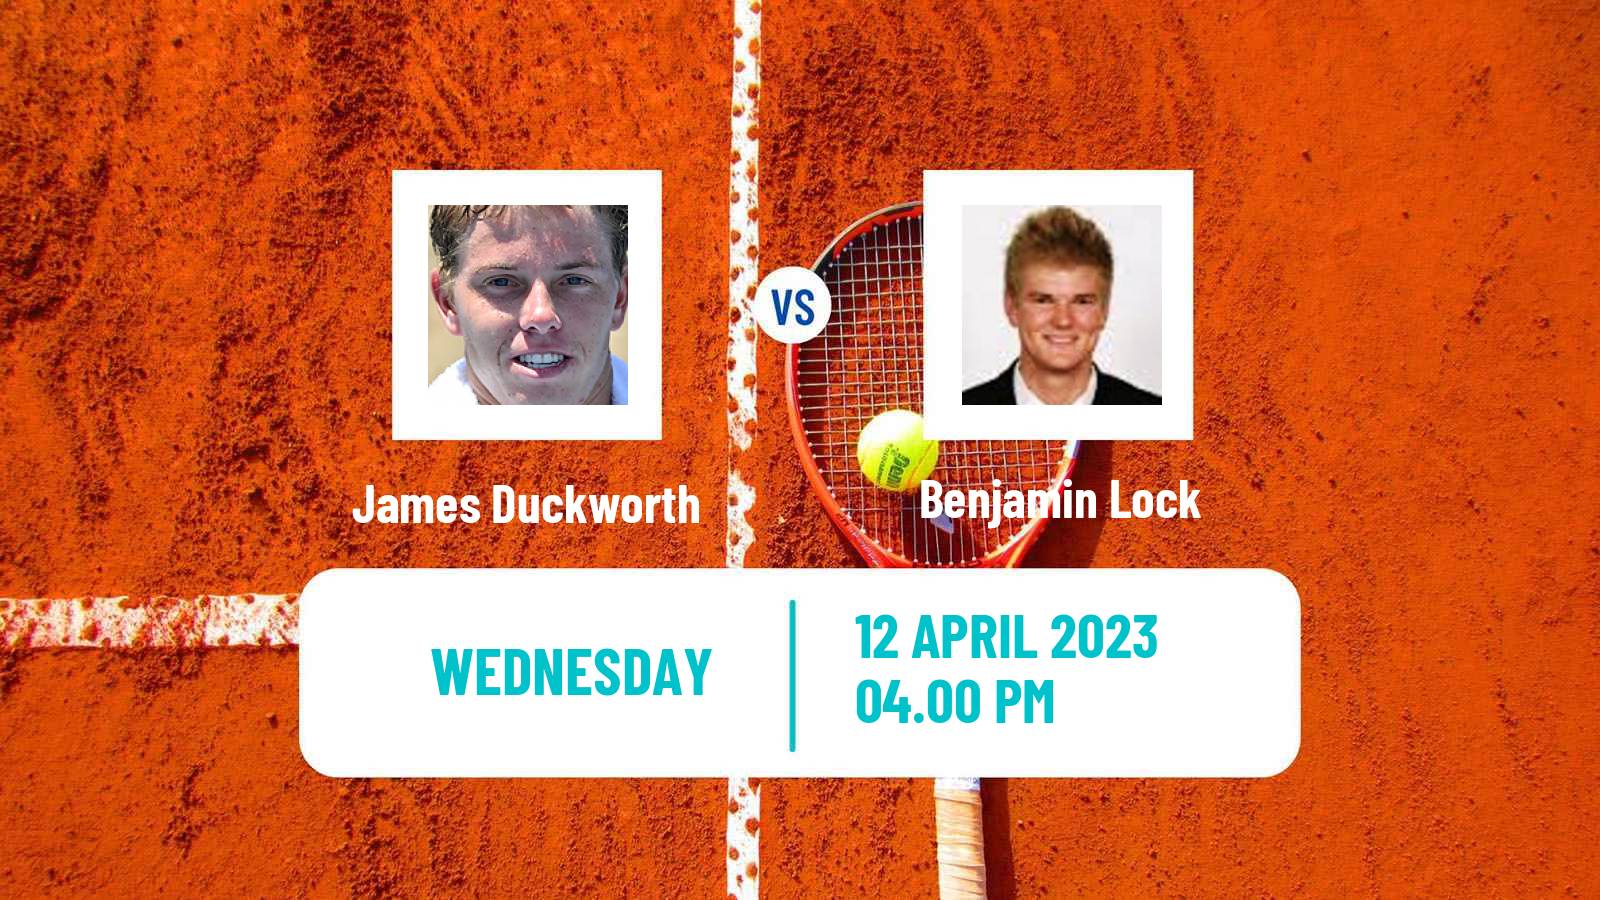 Tennis ATP Challenger James Duckworth - Benjamin Lock